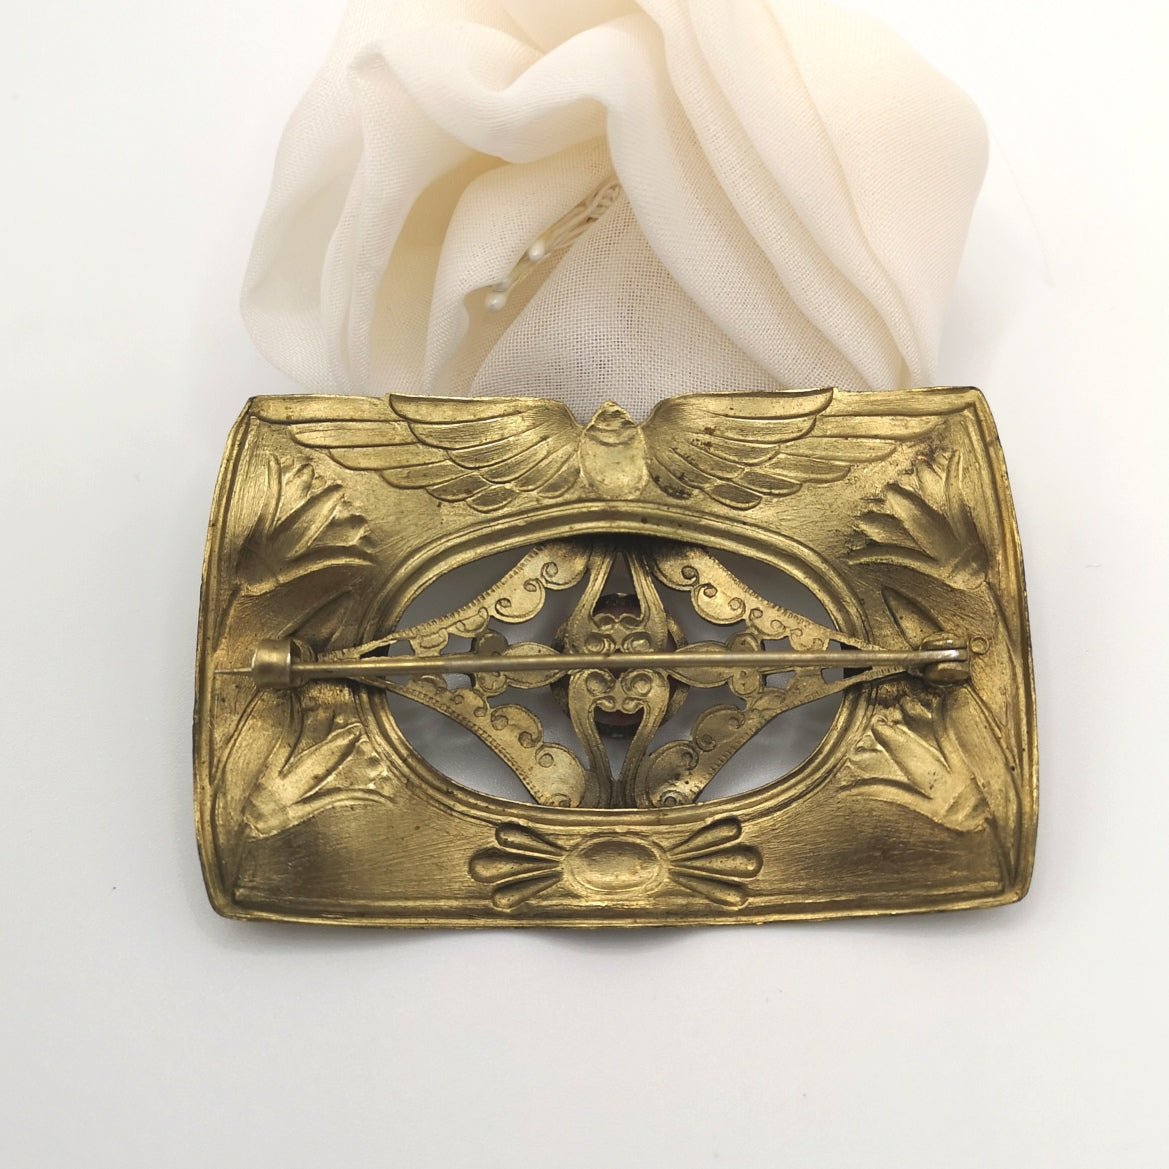 Vintage George Steere Egyptian revival brooch